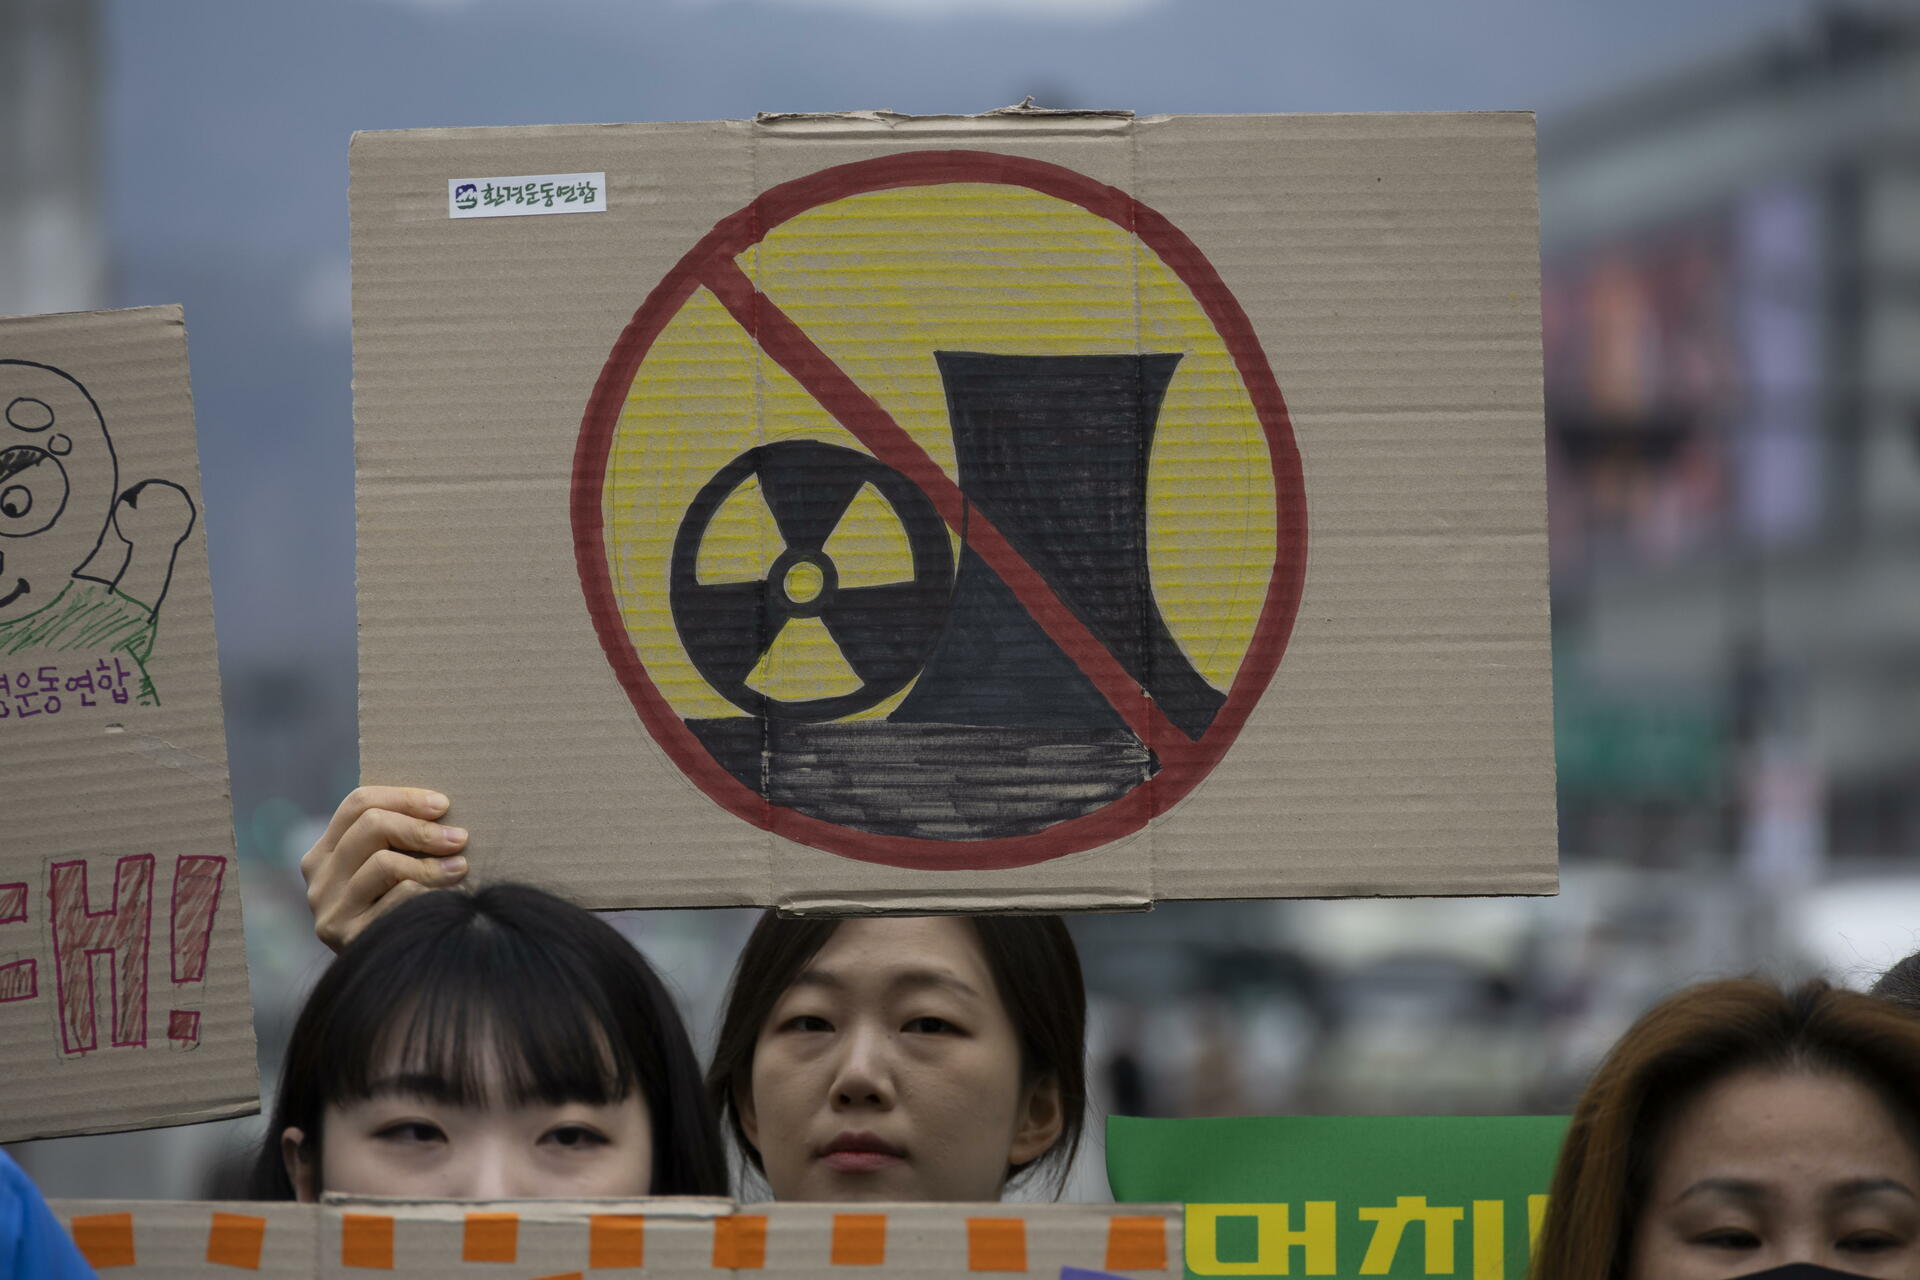 CNSNS da seguimiento a concentraciones de material radioactivo en costas del Pacífico tras liberación de Fukushima 